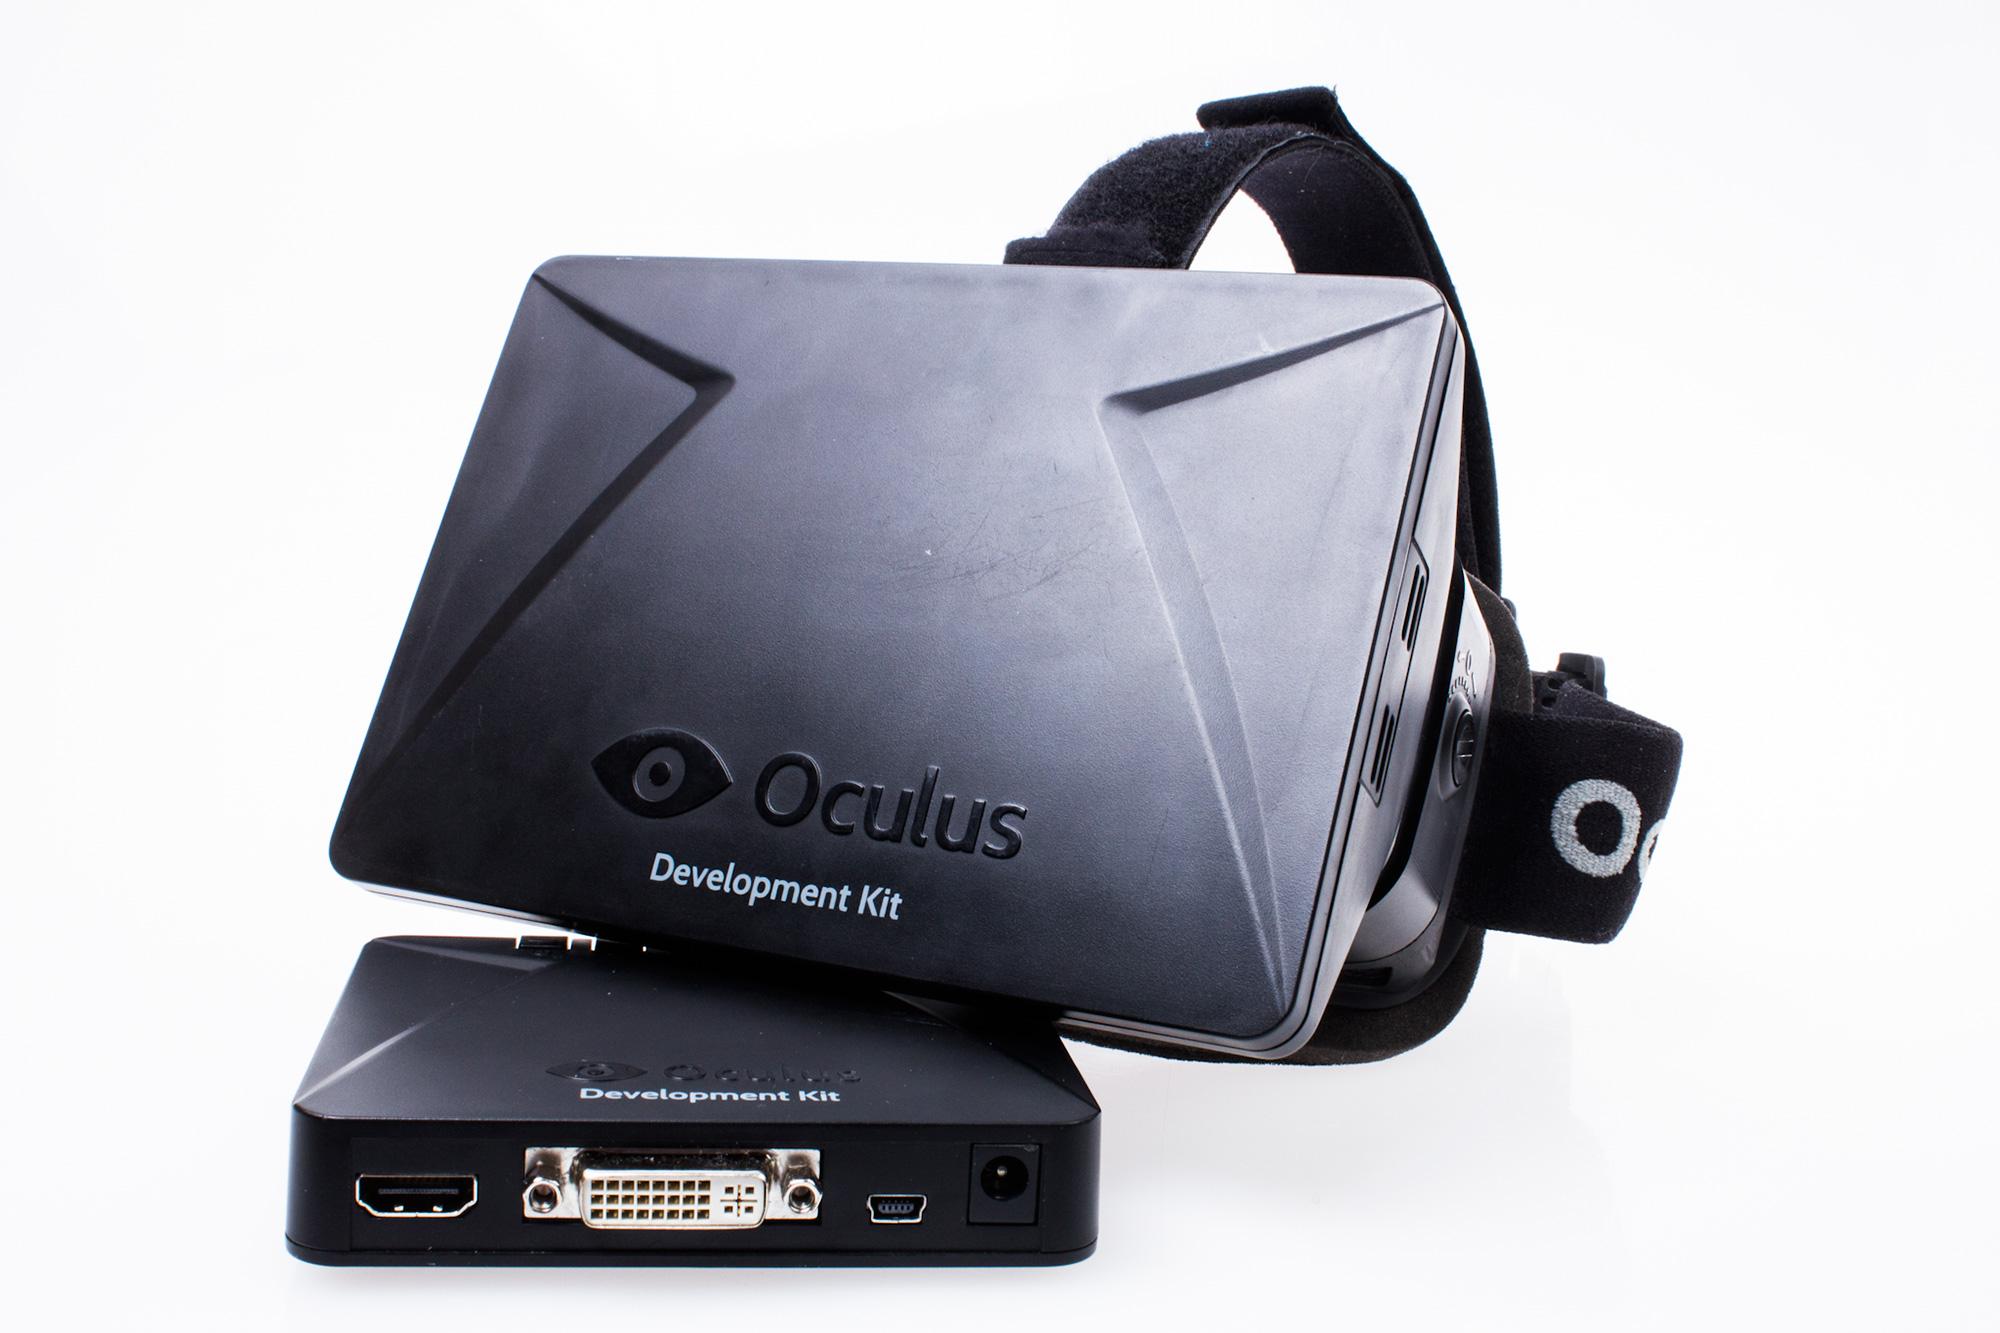 Utviklingsversjonen av Oculus Rift har HDMI- og DVI-tilkoblinger.Foto: Varg Aamo, Hardware.no